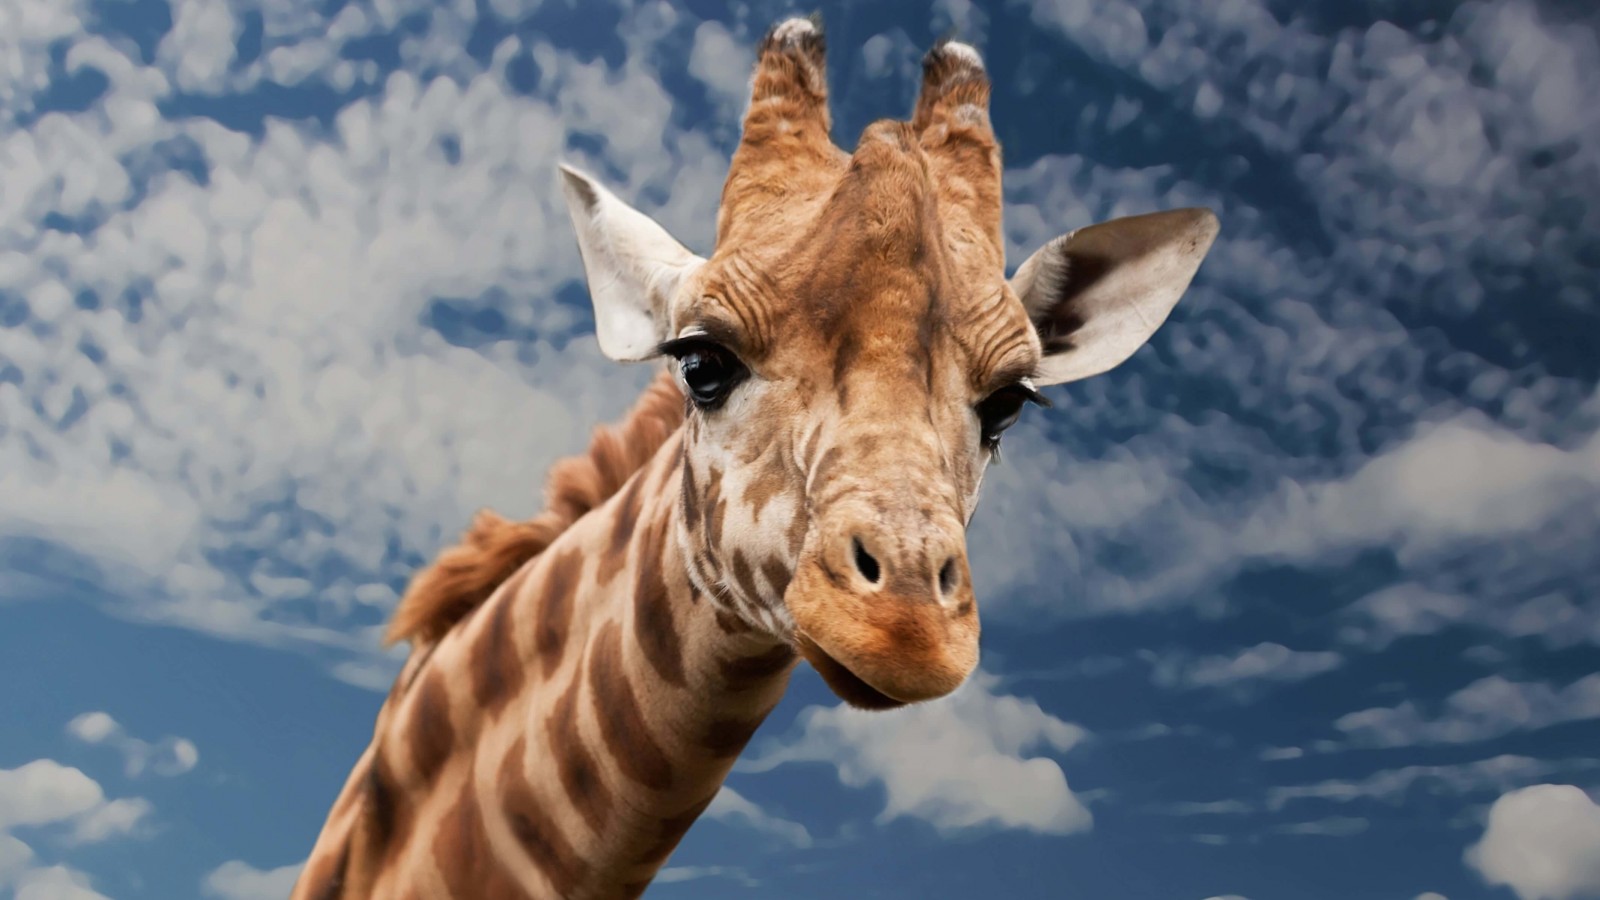 Funny Giraffe Wallpaper for Desktop 1600x900